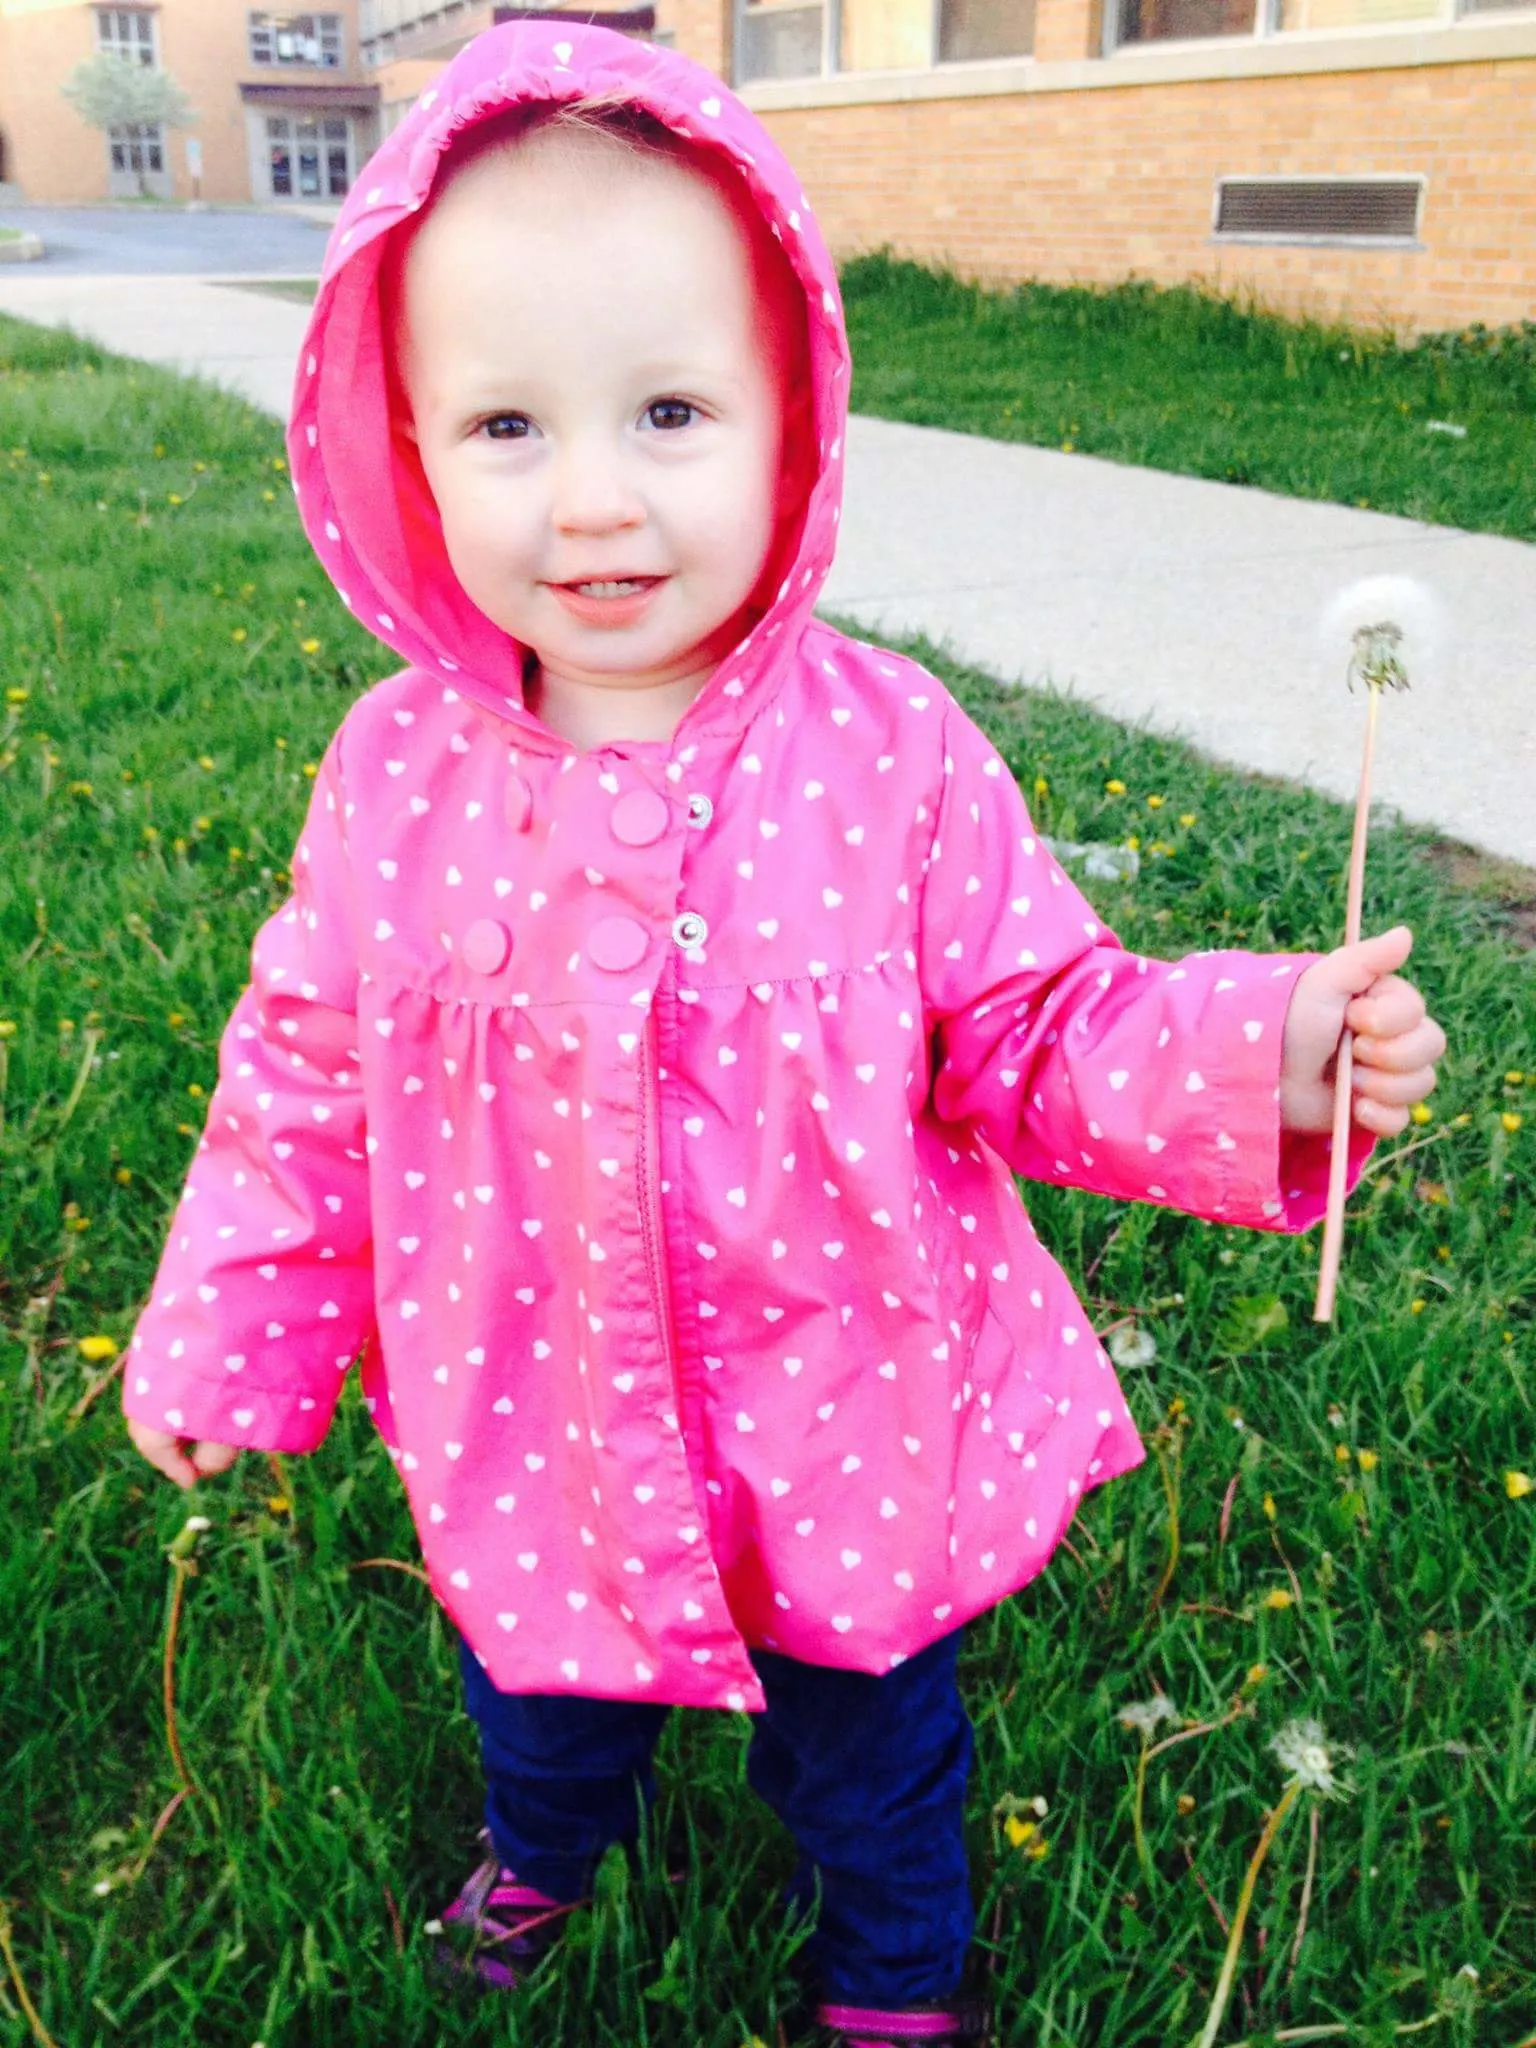 Toddler in pink jacket holding dandelion